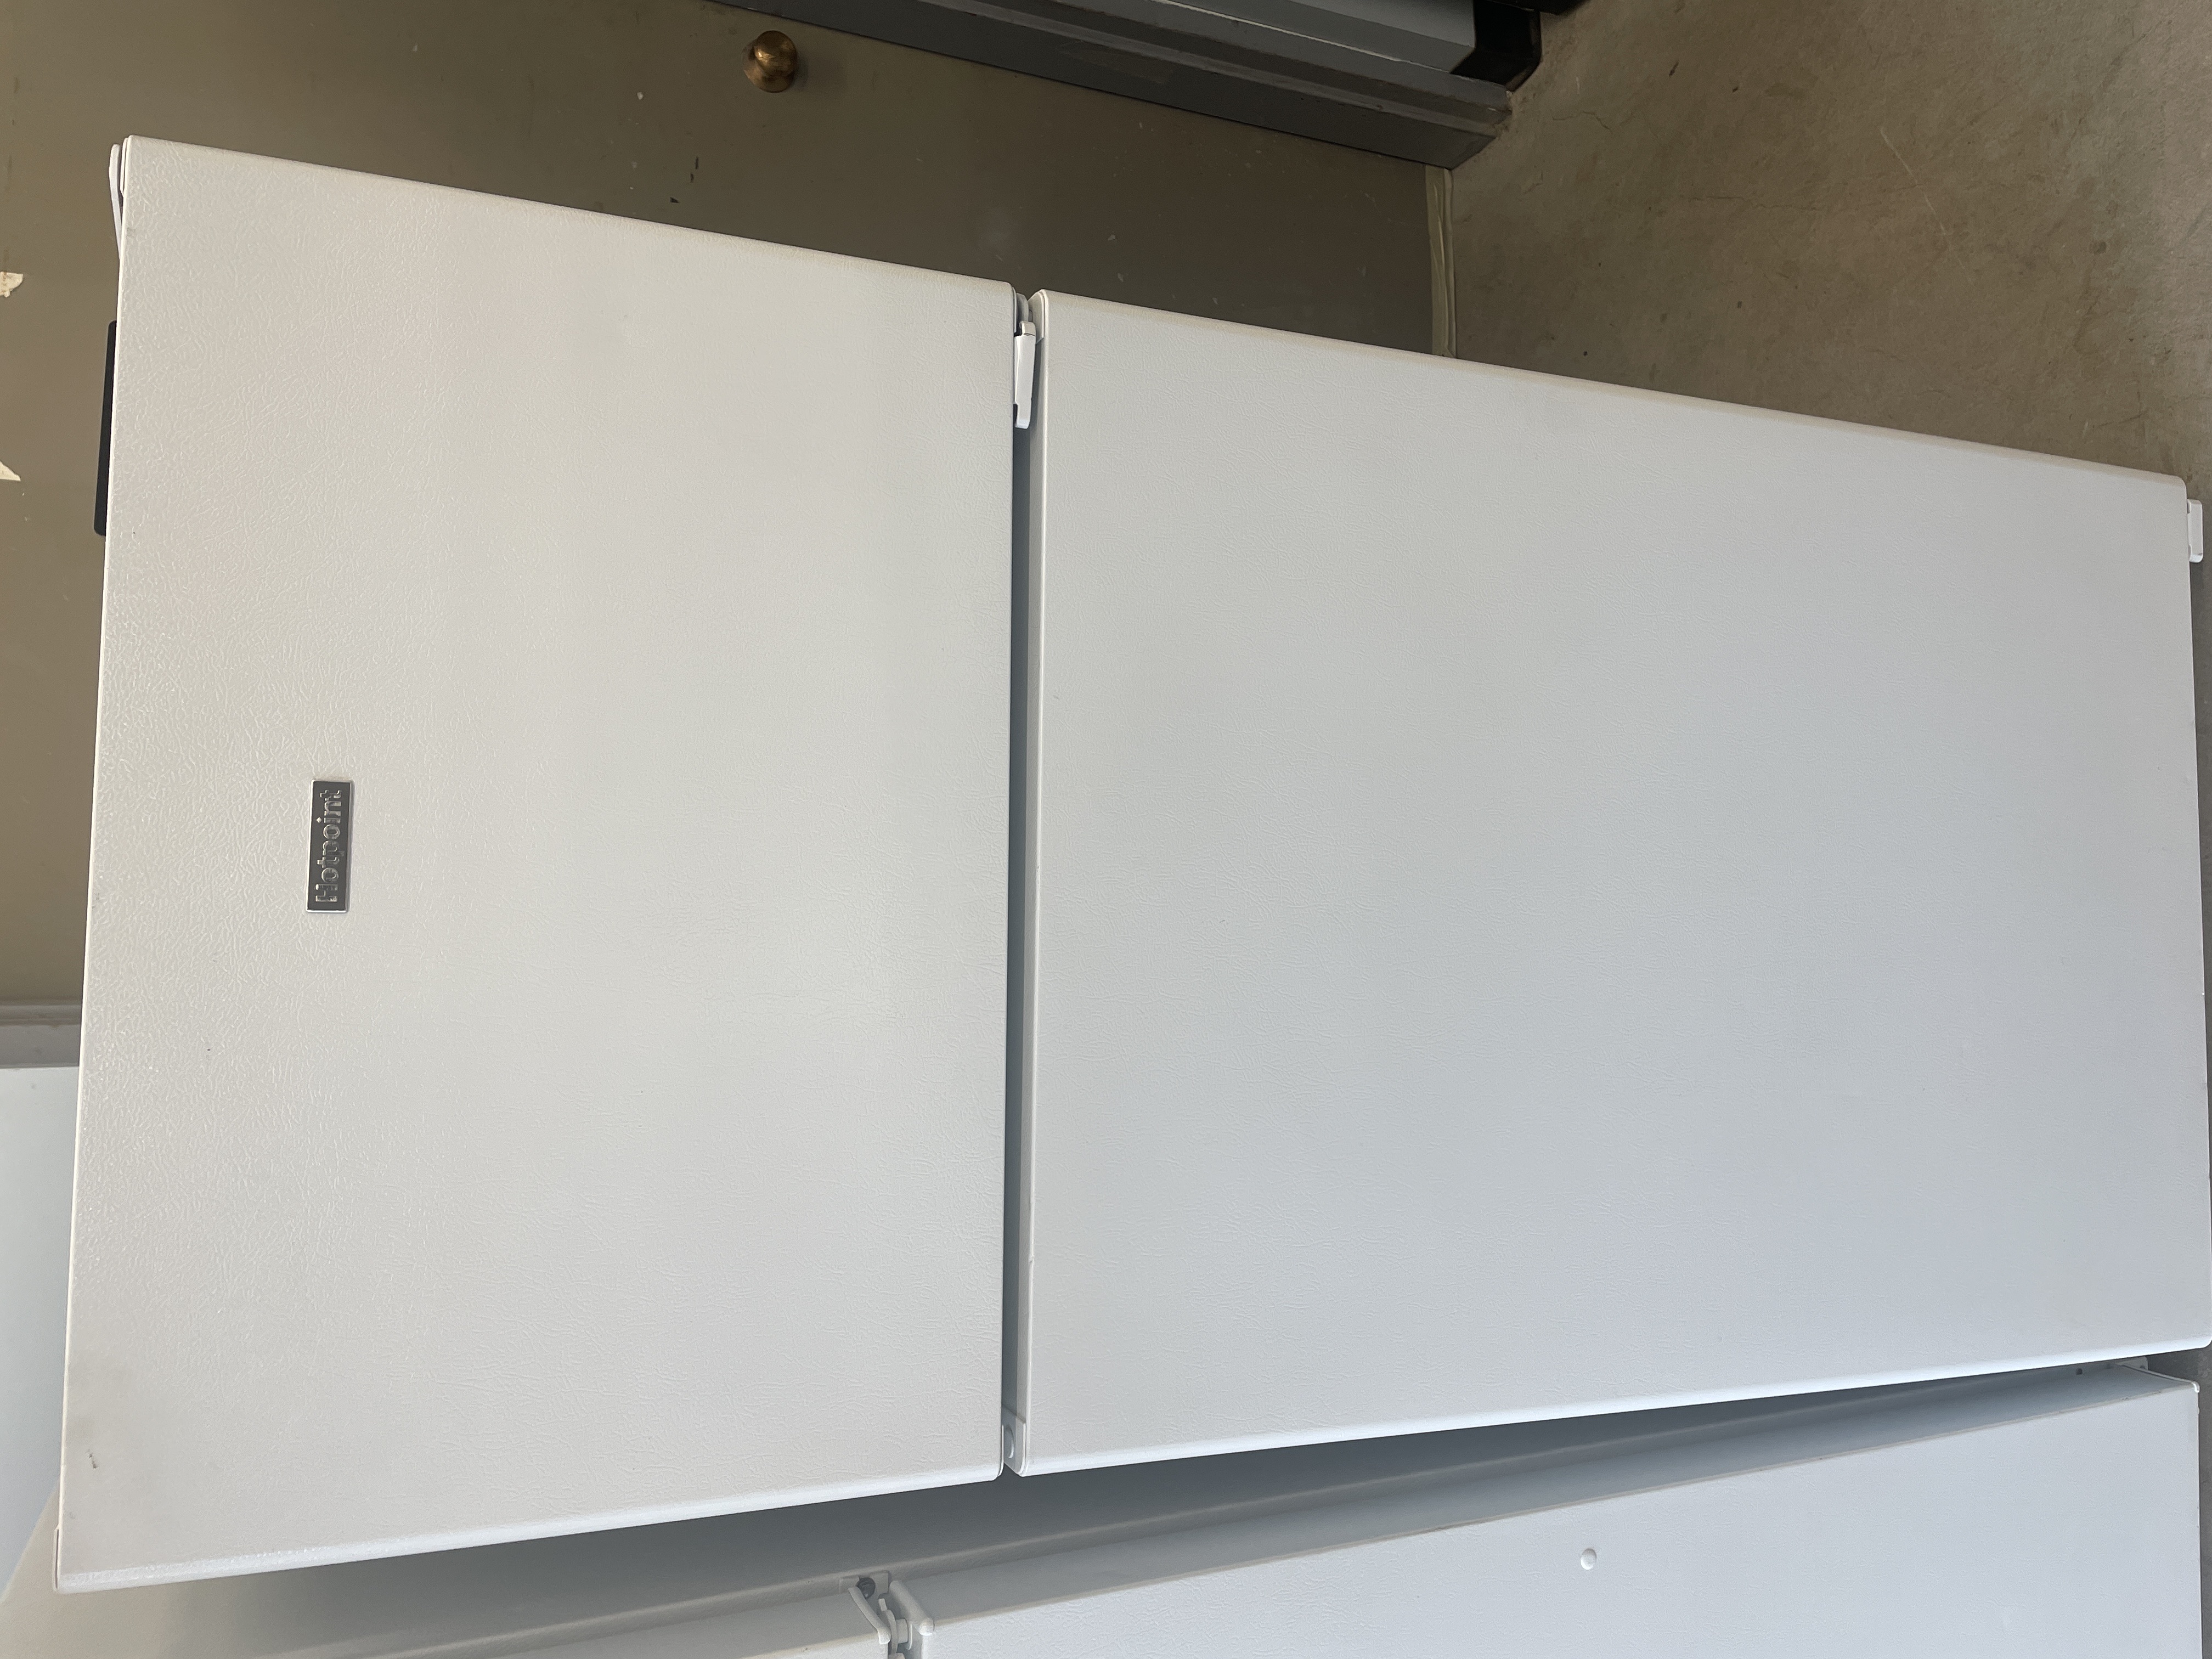 Réfrigérateurs combinés 402L Froid Ventilé HOTPOINT 70cm F,  HOT8050147608142